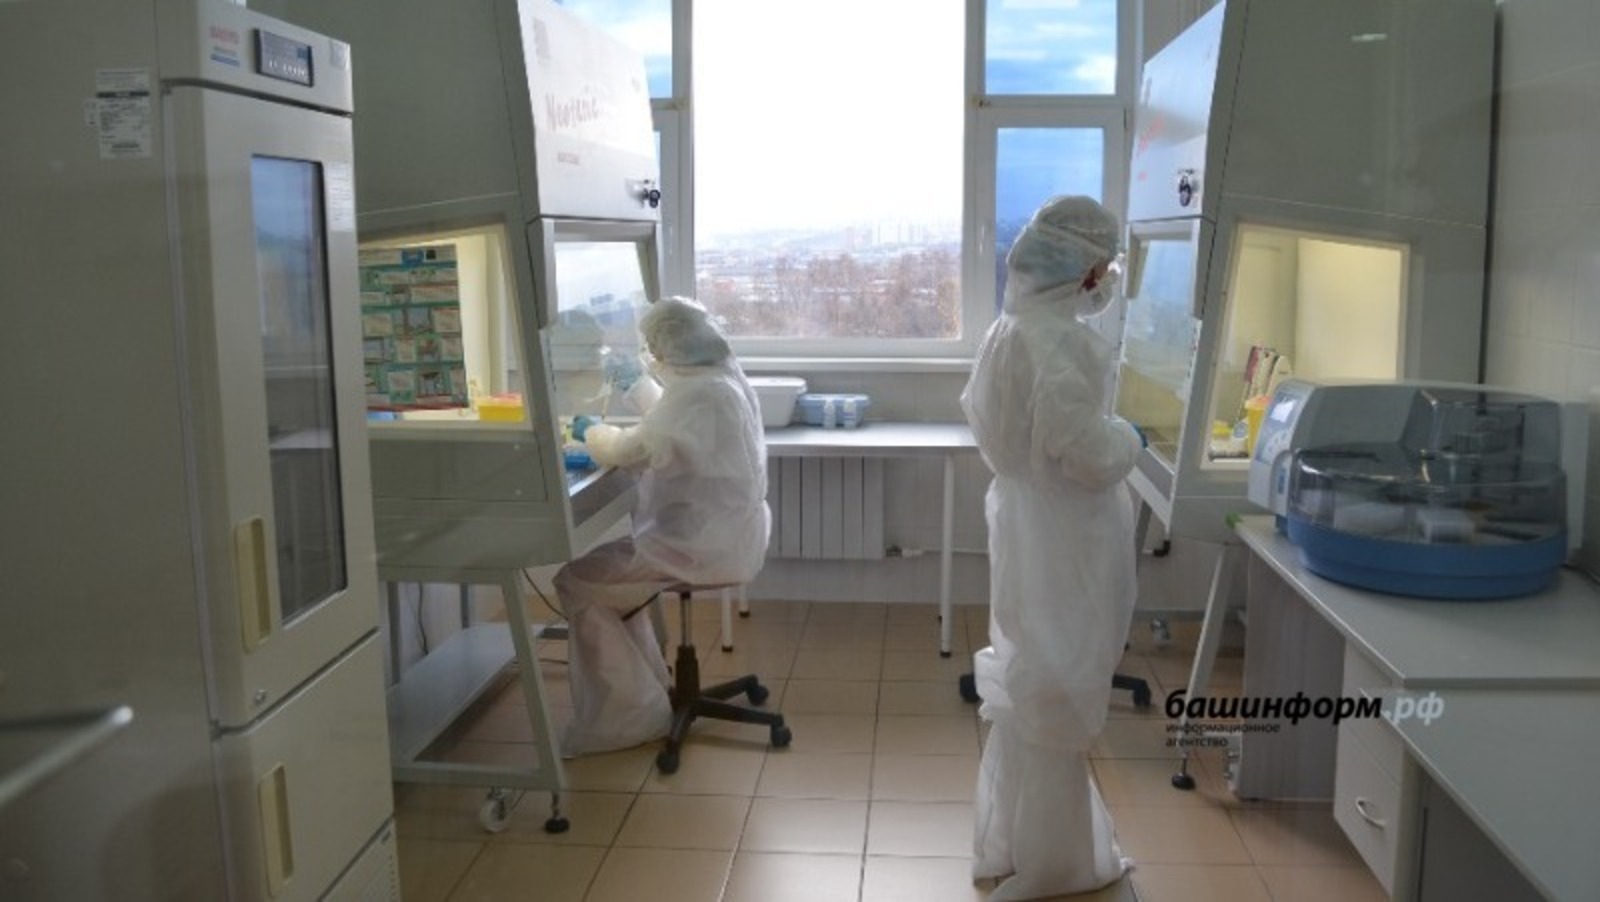 Владимир Путин выразил благодарность врачам из Башкирии за борьбу с коронавирусом в период пандемии